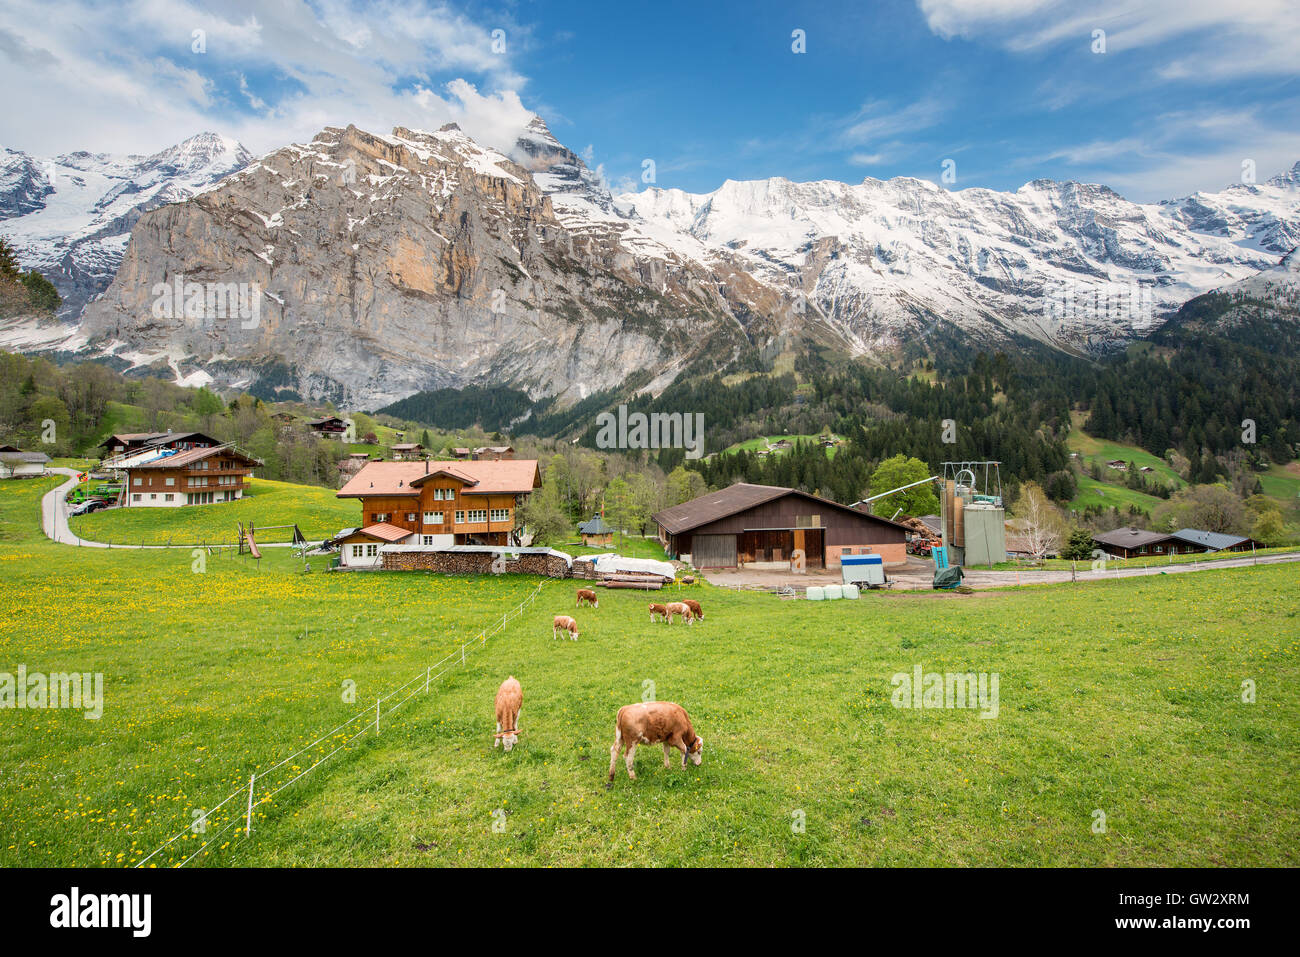 Vacca e casa colonica con alpi svizzere montagna di neve in background in Grindelwald, Svizzera.Il bestiame agricoltura in Svizzera. Foto Stock